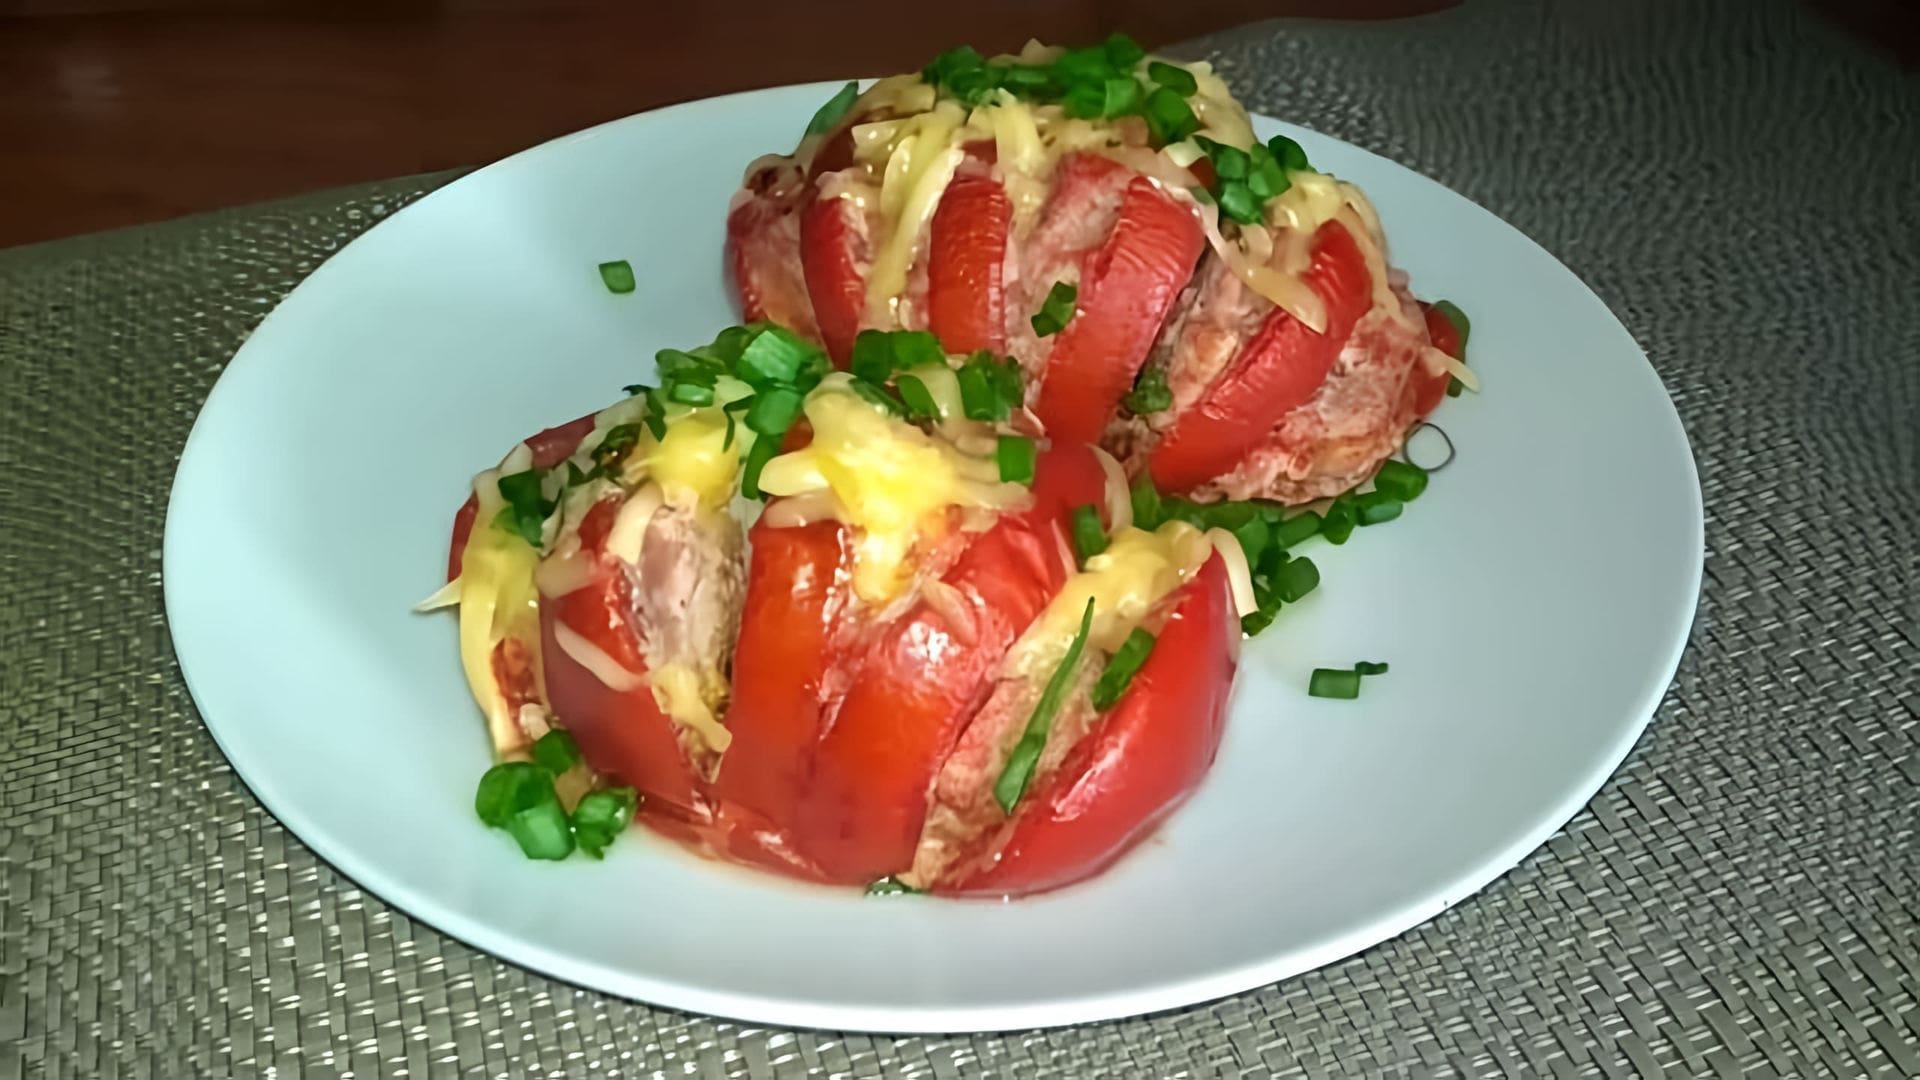 В этом видео демонстрируется рецепт приготовления фаршированных помидоров с мясом